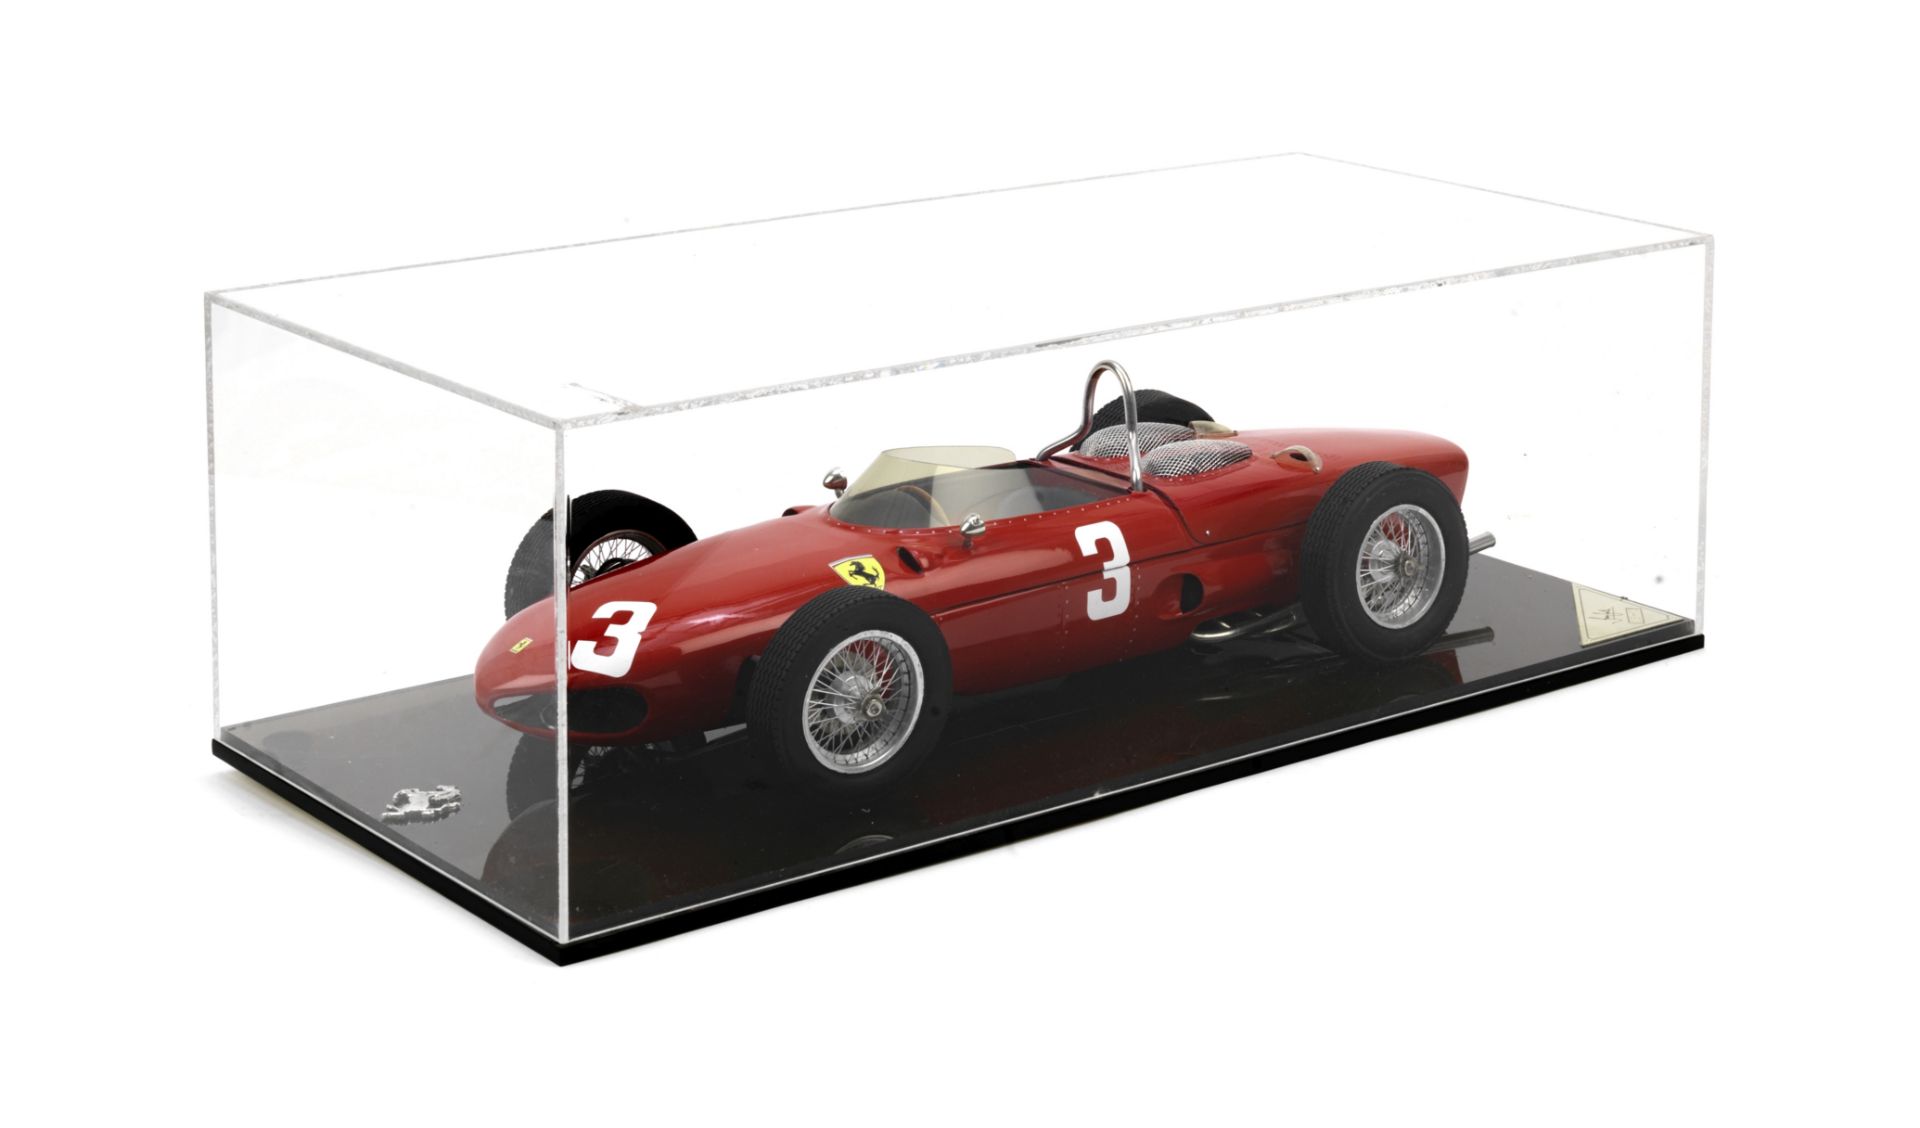 A 1:8 scale scratch-built model of Wolfgang von Trips' 1961 Dutch Grand Prix Ferrari 156 F1 'Shar...